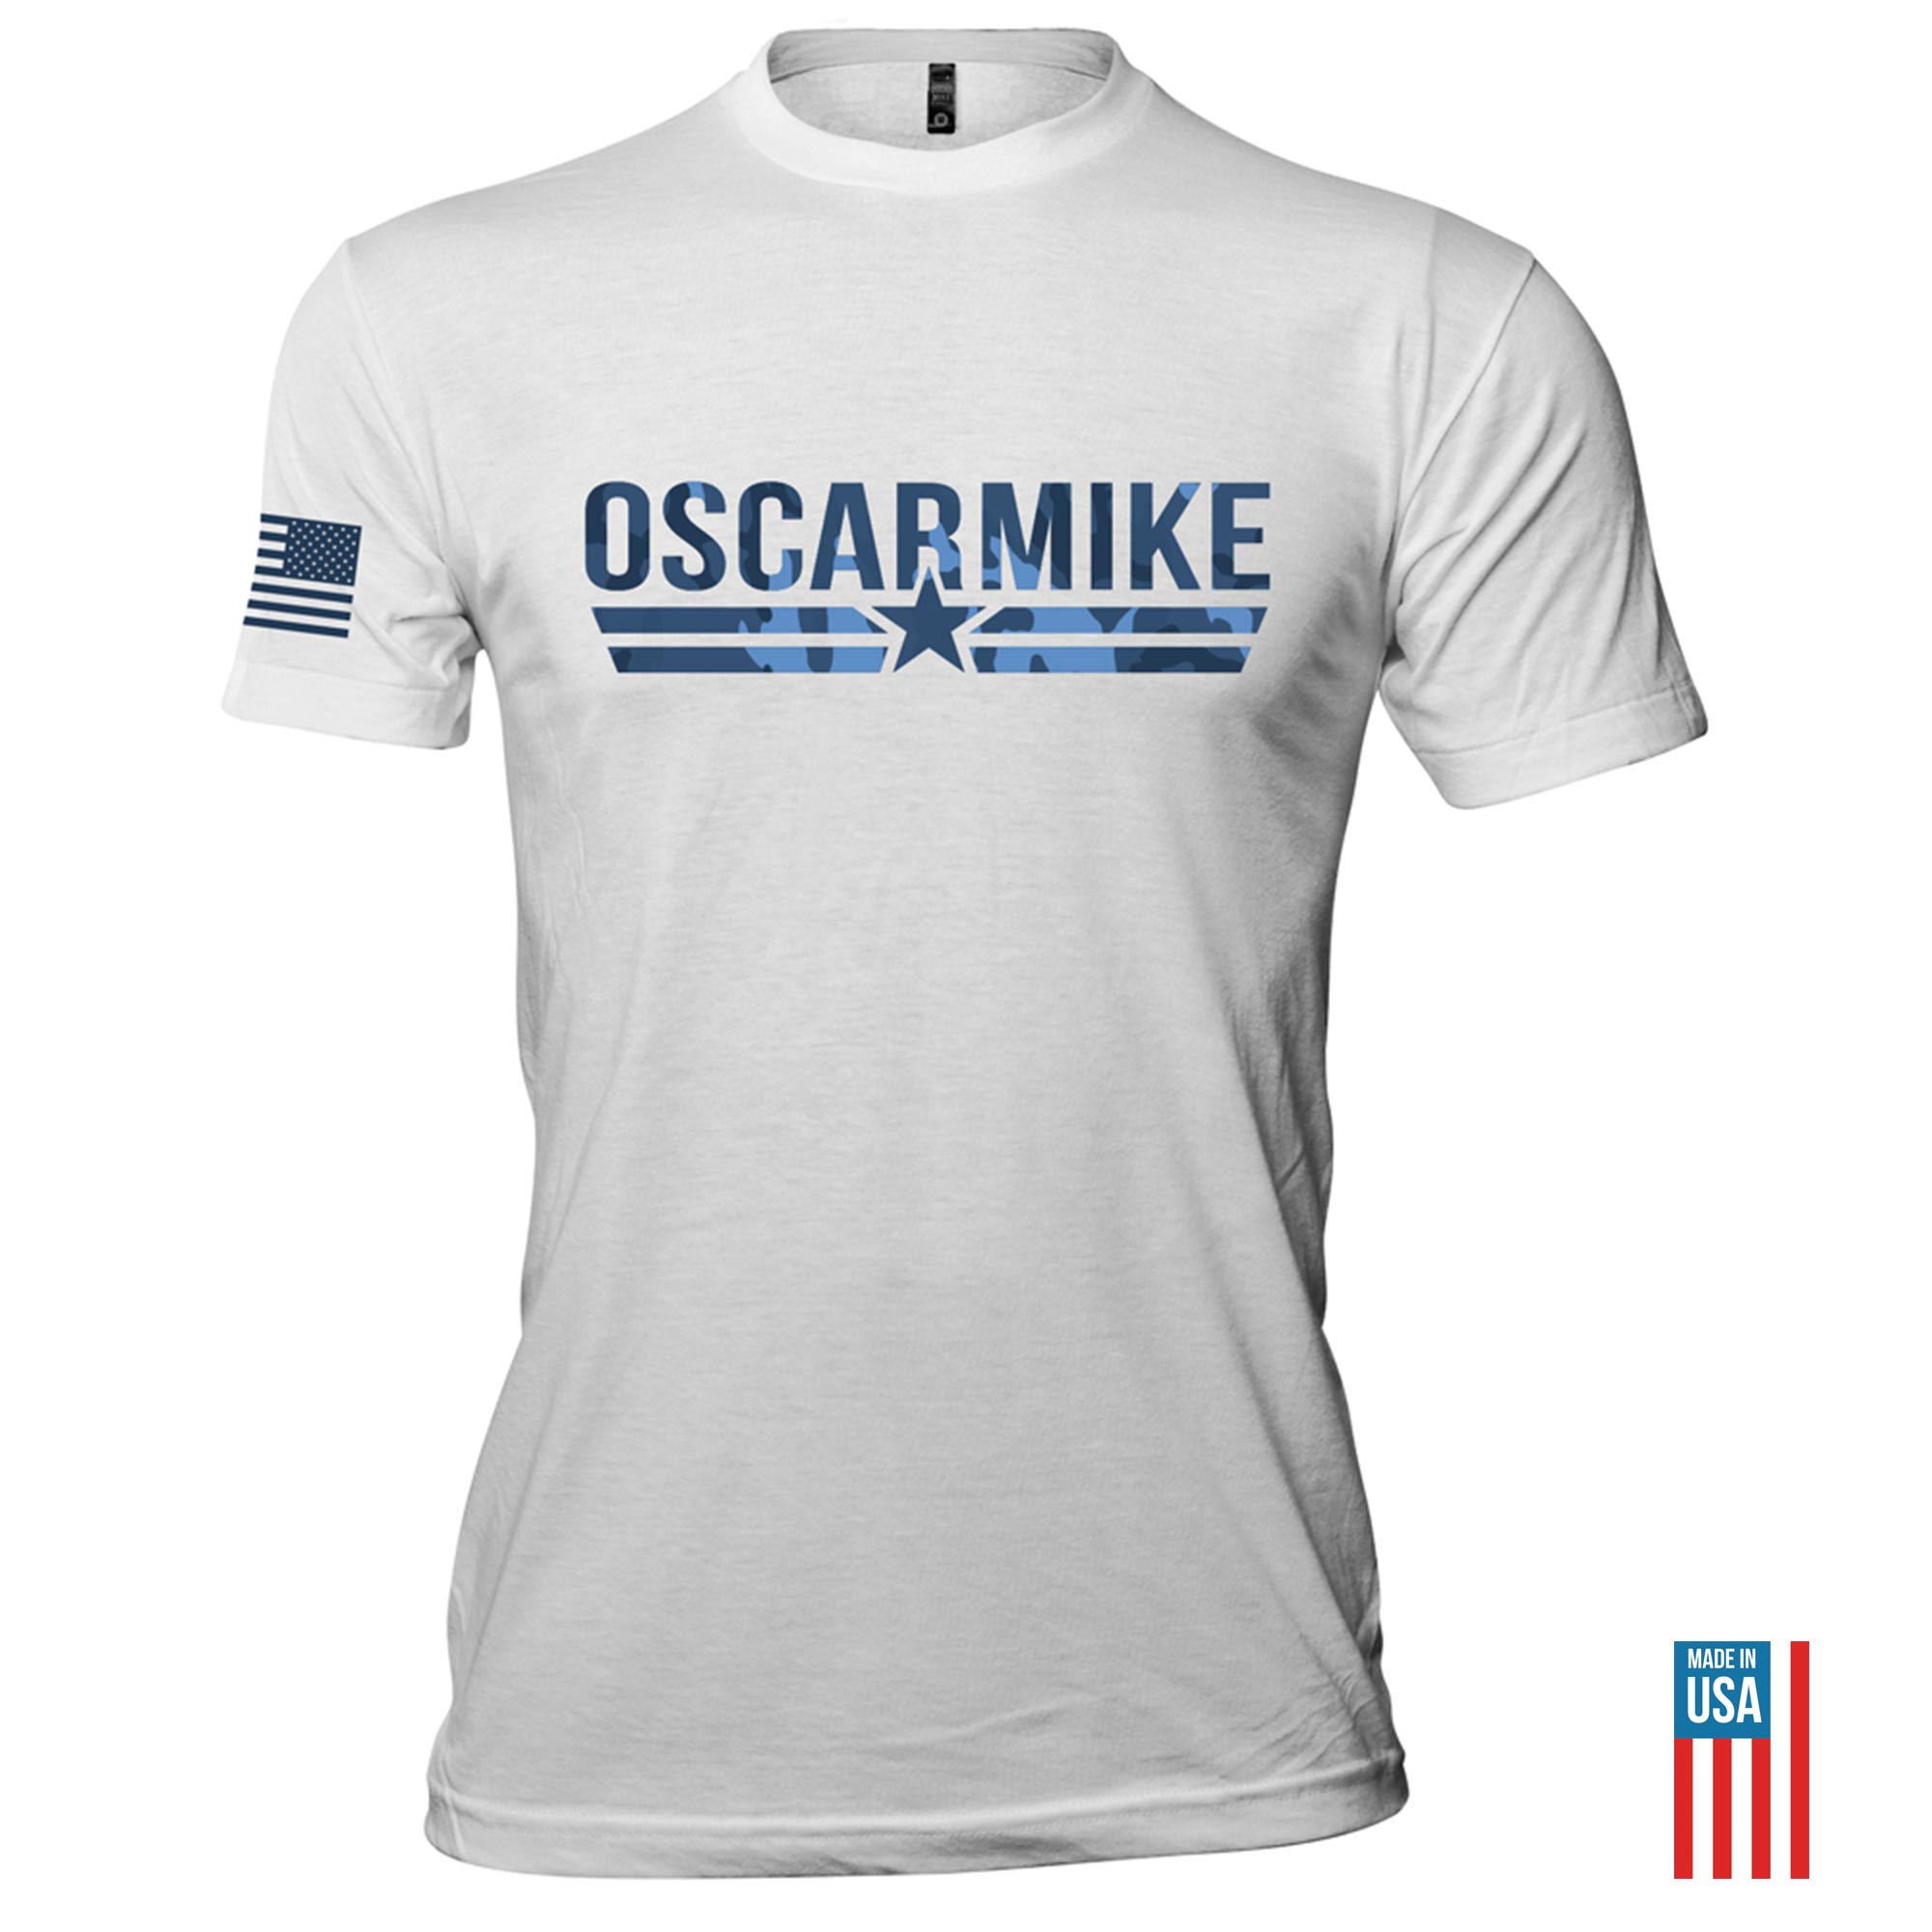 Arctic Camo Logo Tee T-Shirt from Oscar Mike Apparel